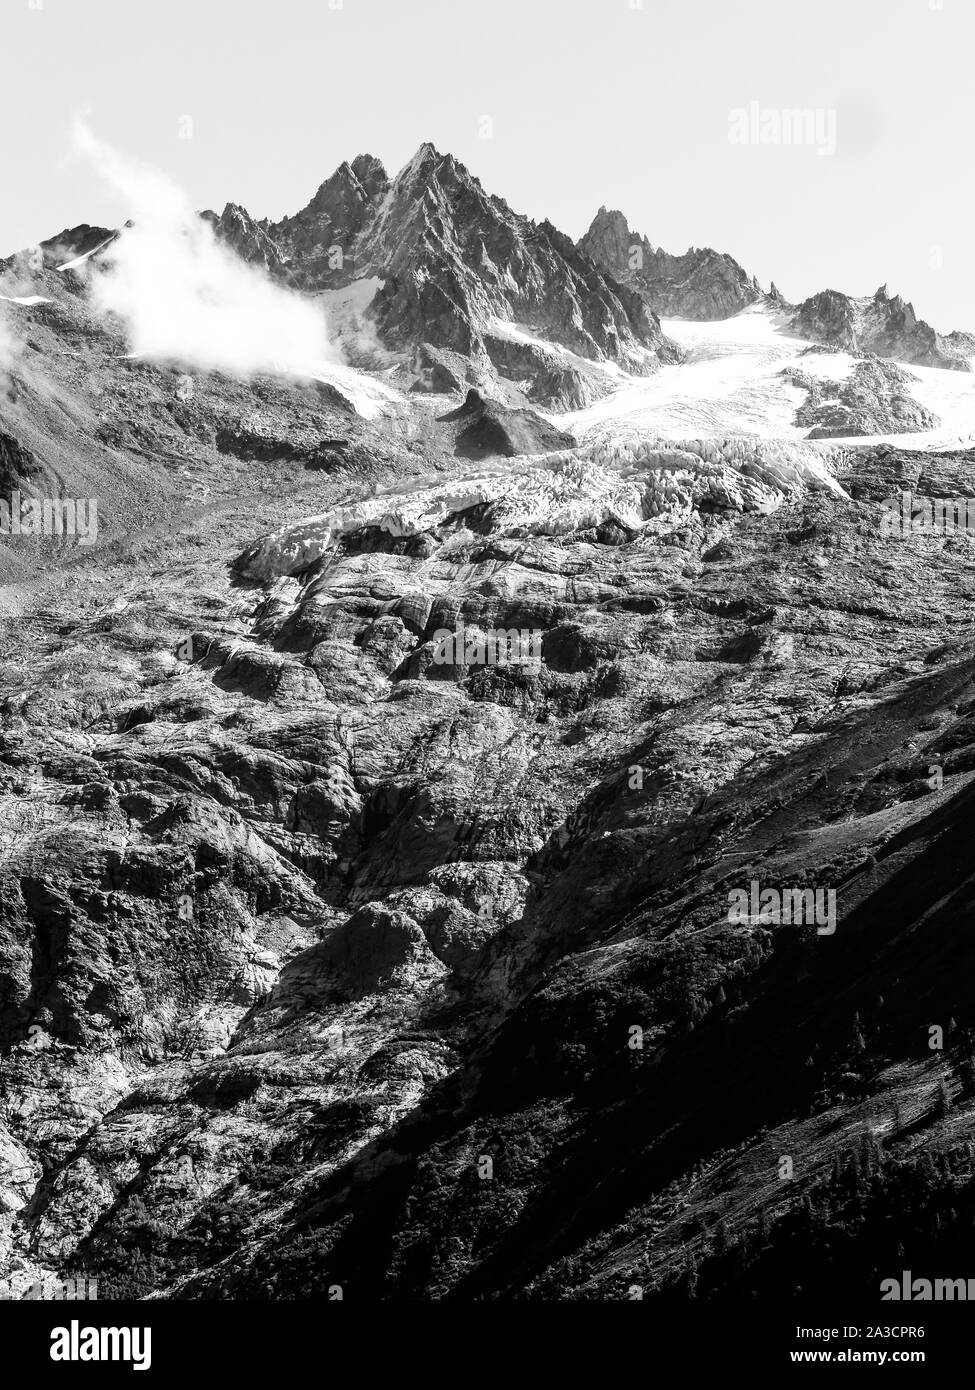 Argentieres Glacier seen from the Aiguilles Rouges balcony (Balcon des Aiguilles Rouges), Chamonix-Mont-Blanc Valley, Haute-Savoie, France Stock Photo